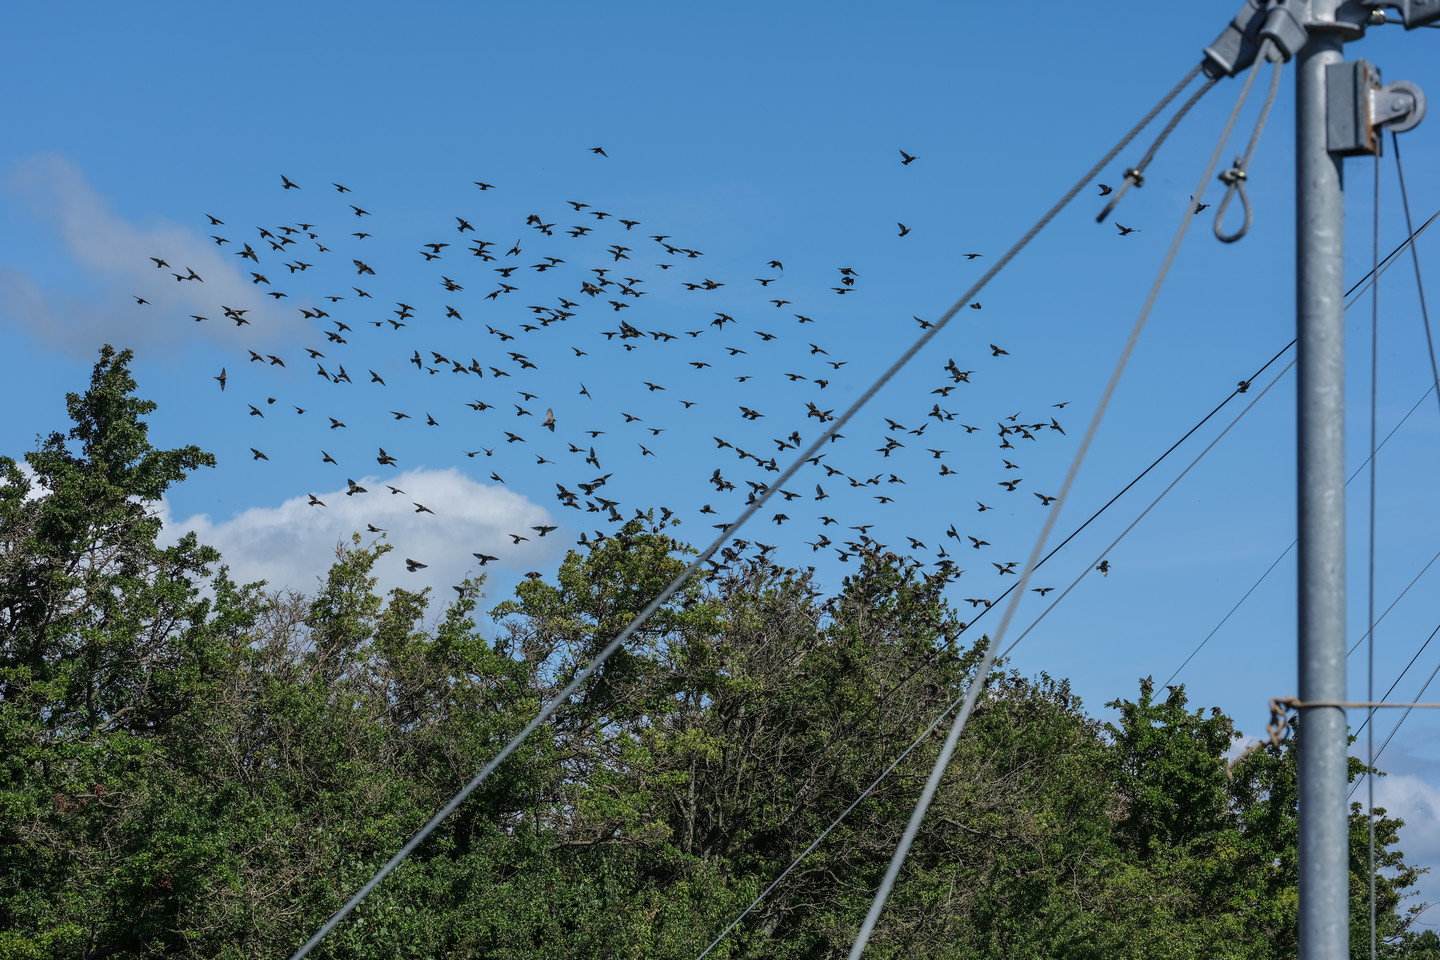   Ventės ragas yra vienas didžiausių pasaulyje paukščių migracijos kelių.<br> V.Ščiavinsko nuotr. 